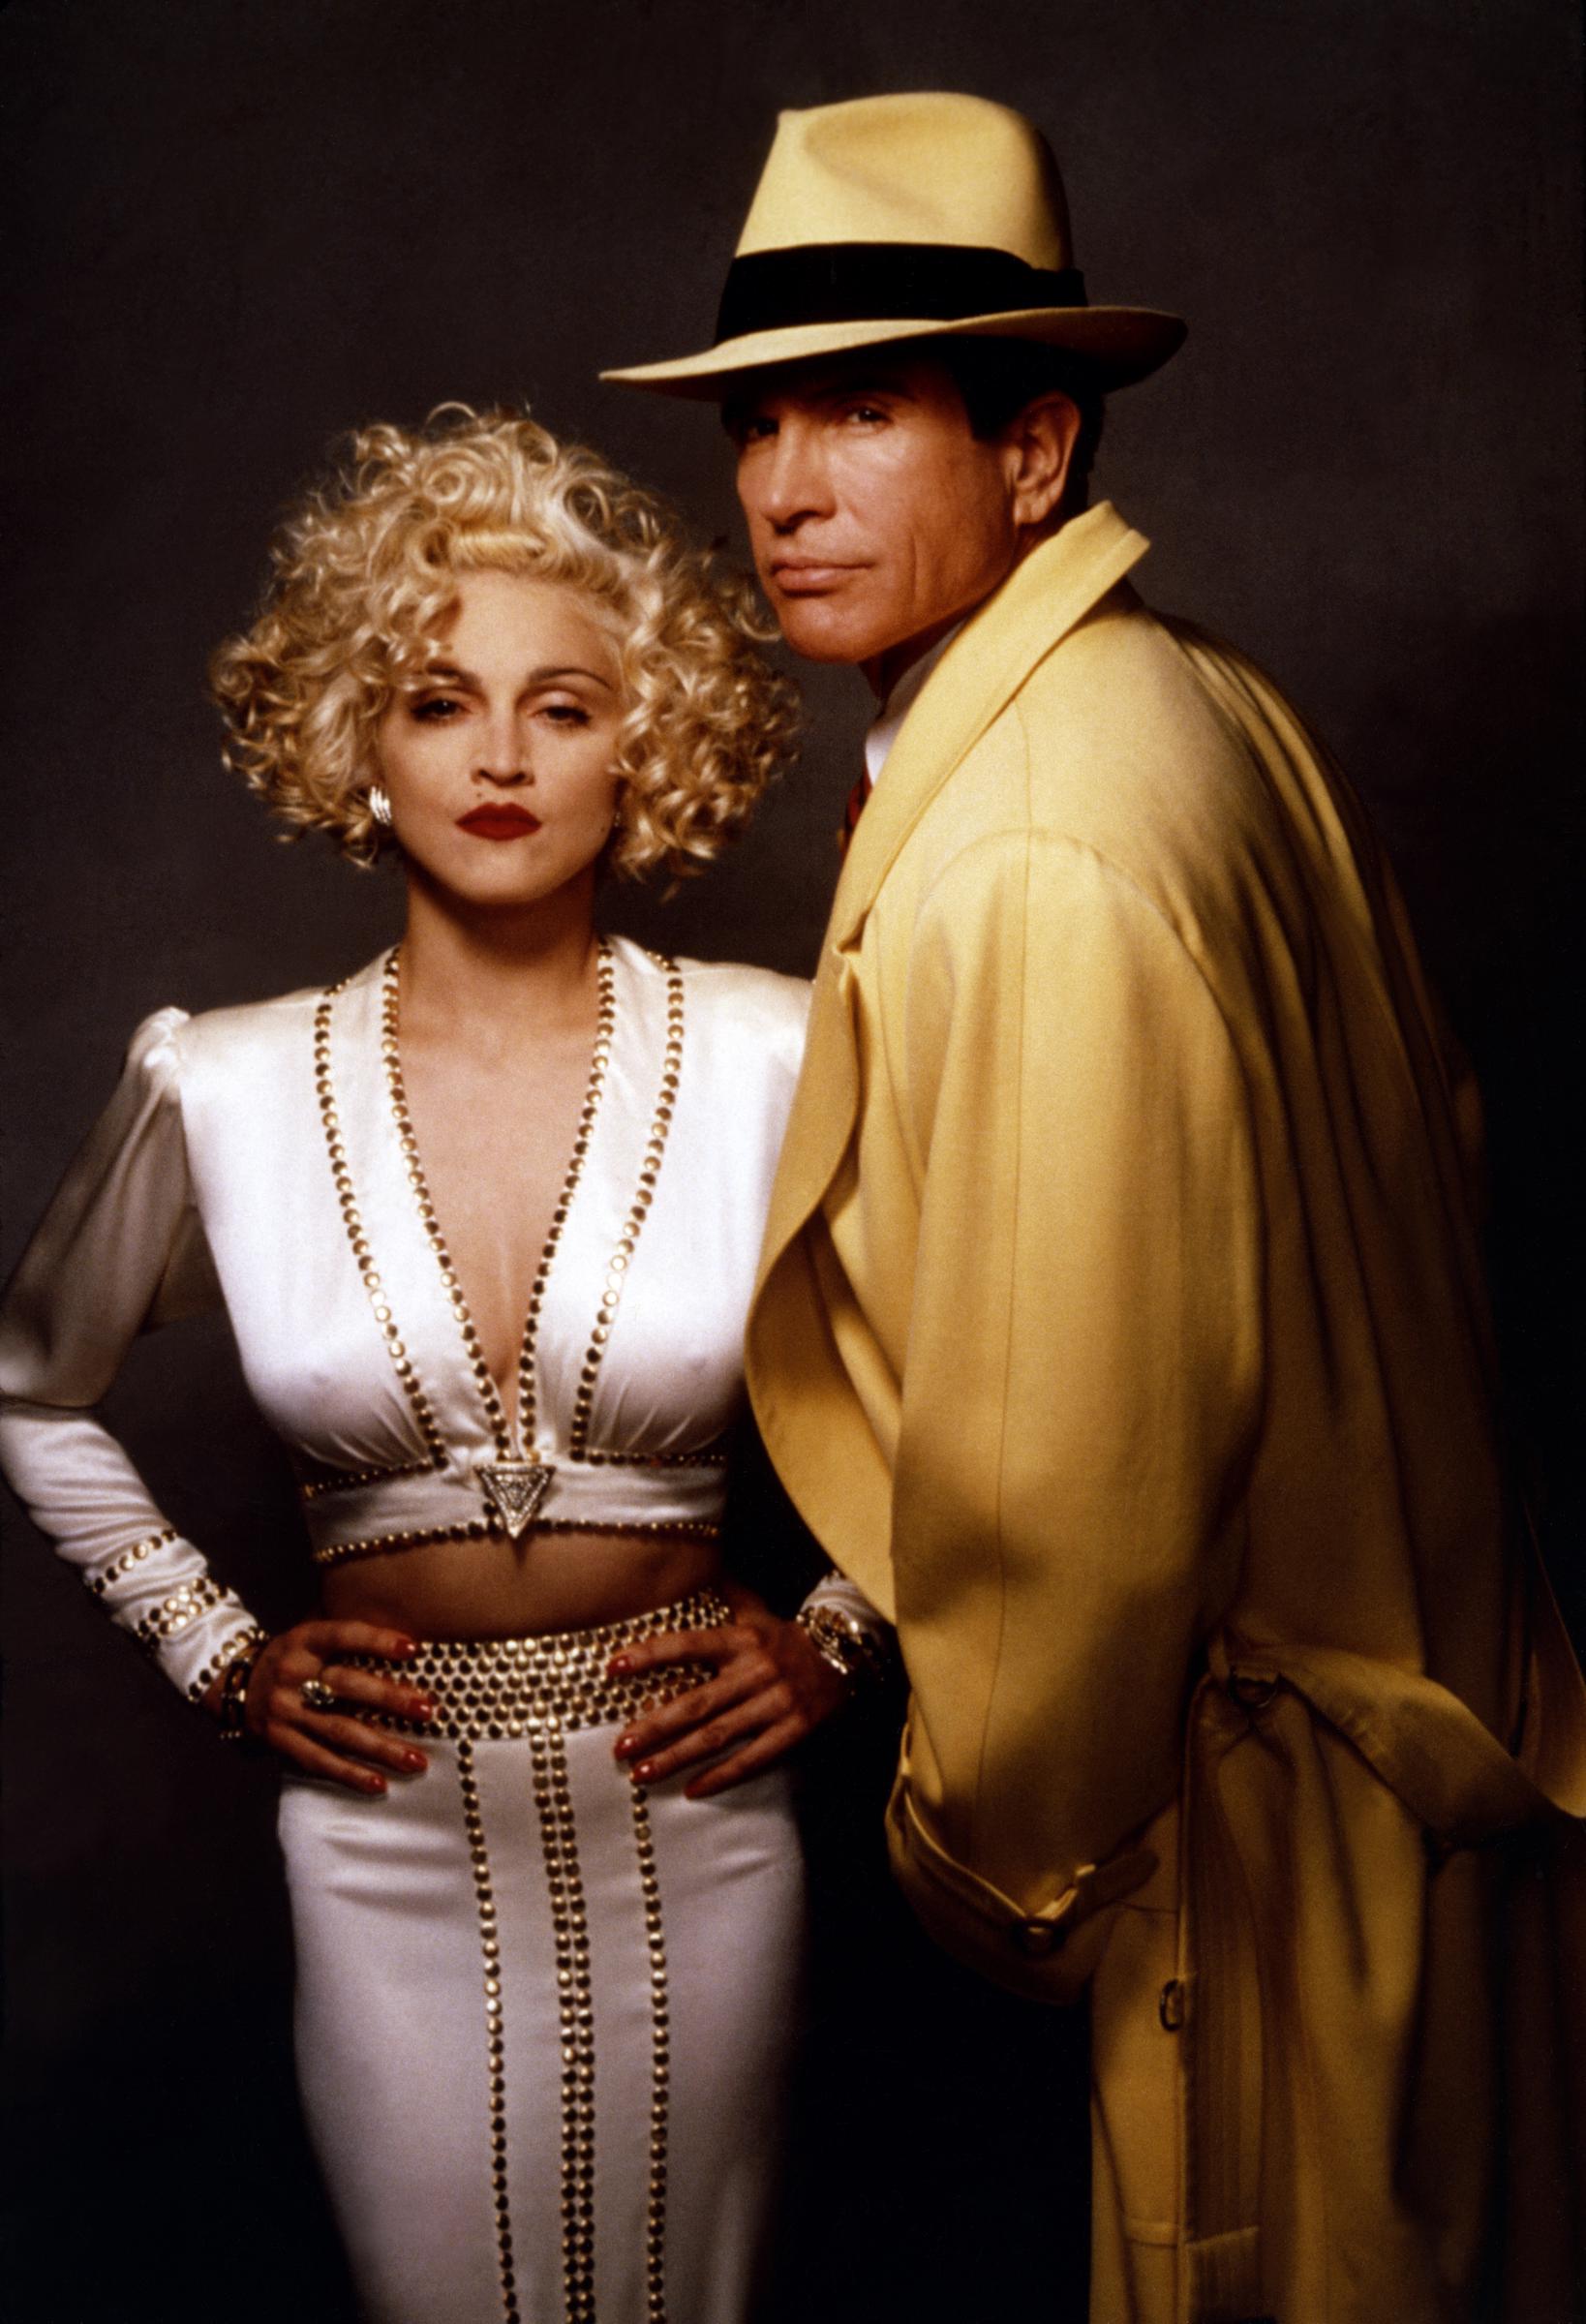 Madonna con Warren Beatty en el plató de su película "Dick Tracy", en 1990. | Fuente: Getty Images